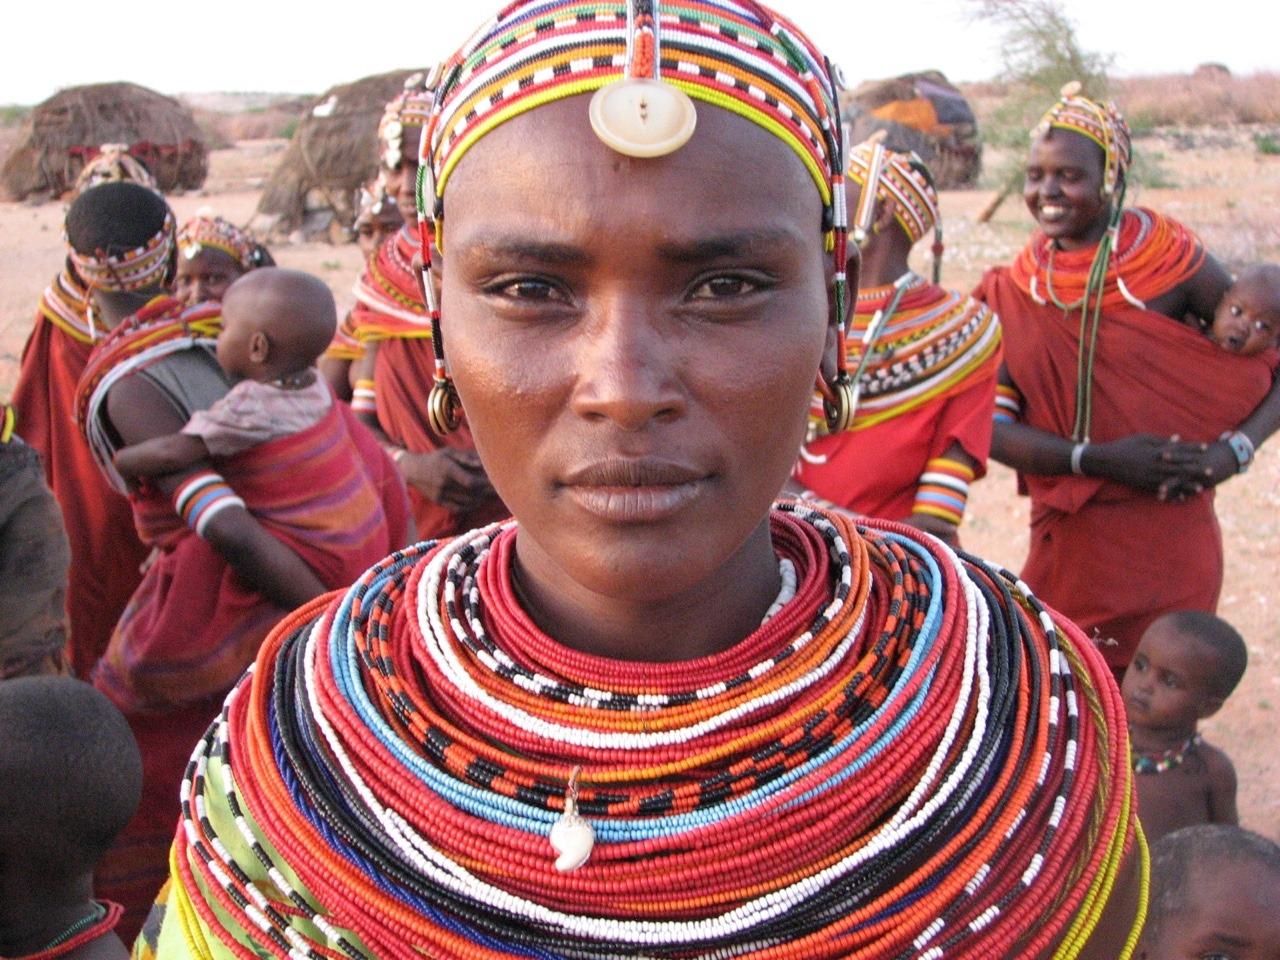 The Bantu people ⬇️ The term “Bantu”